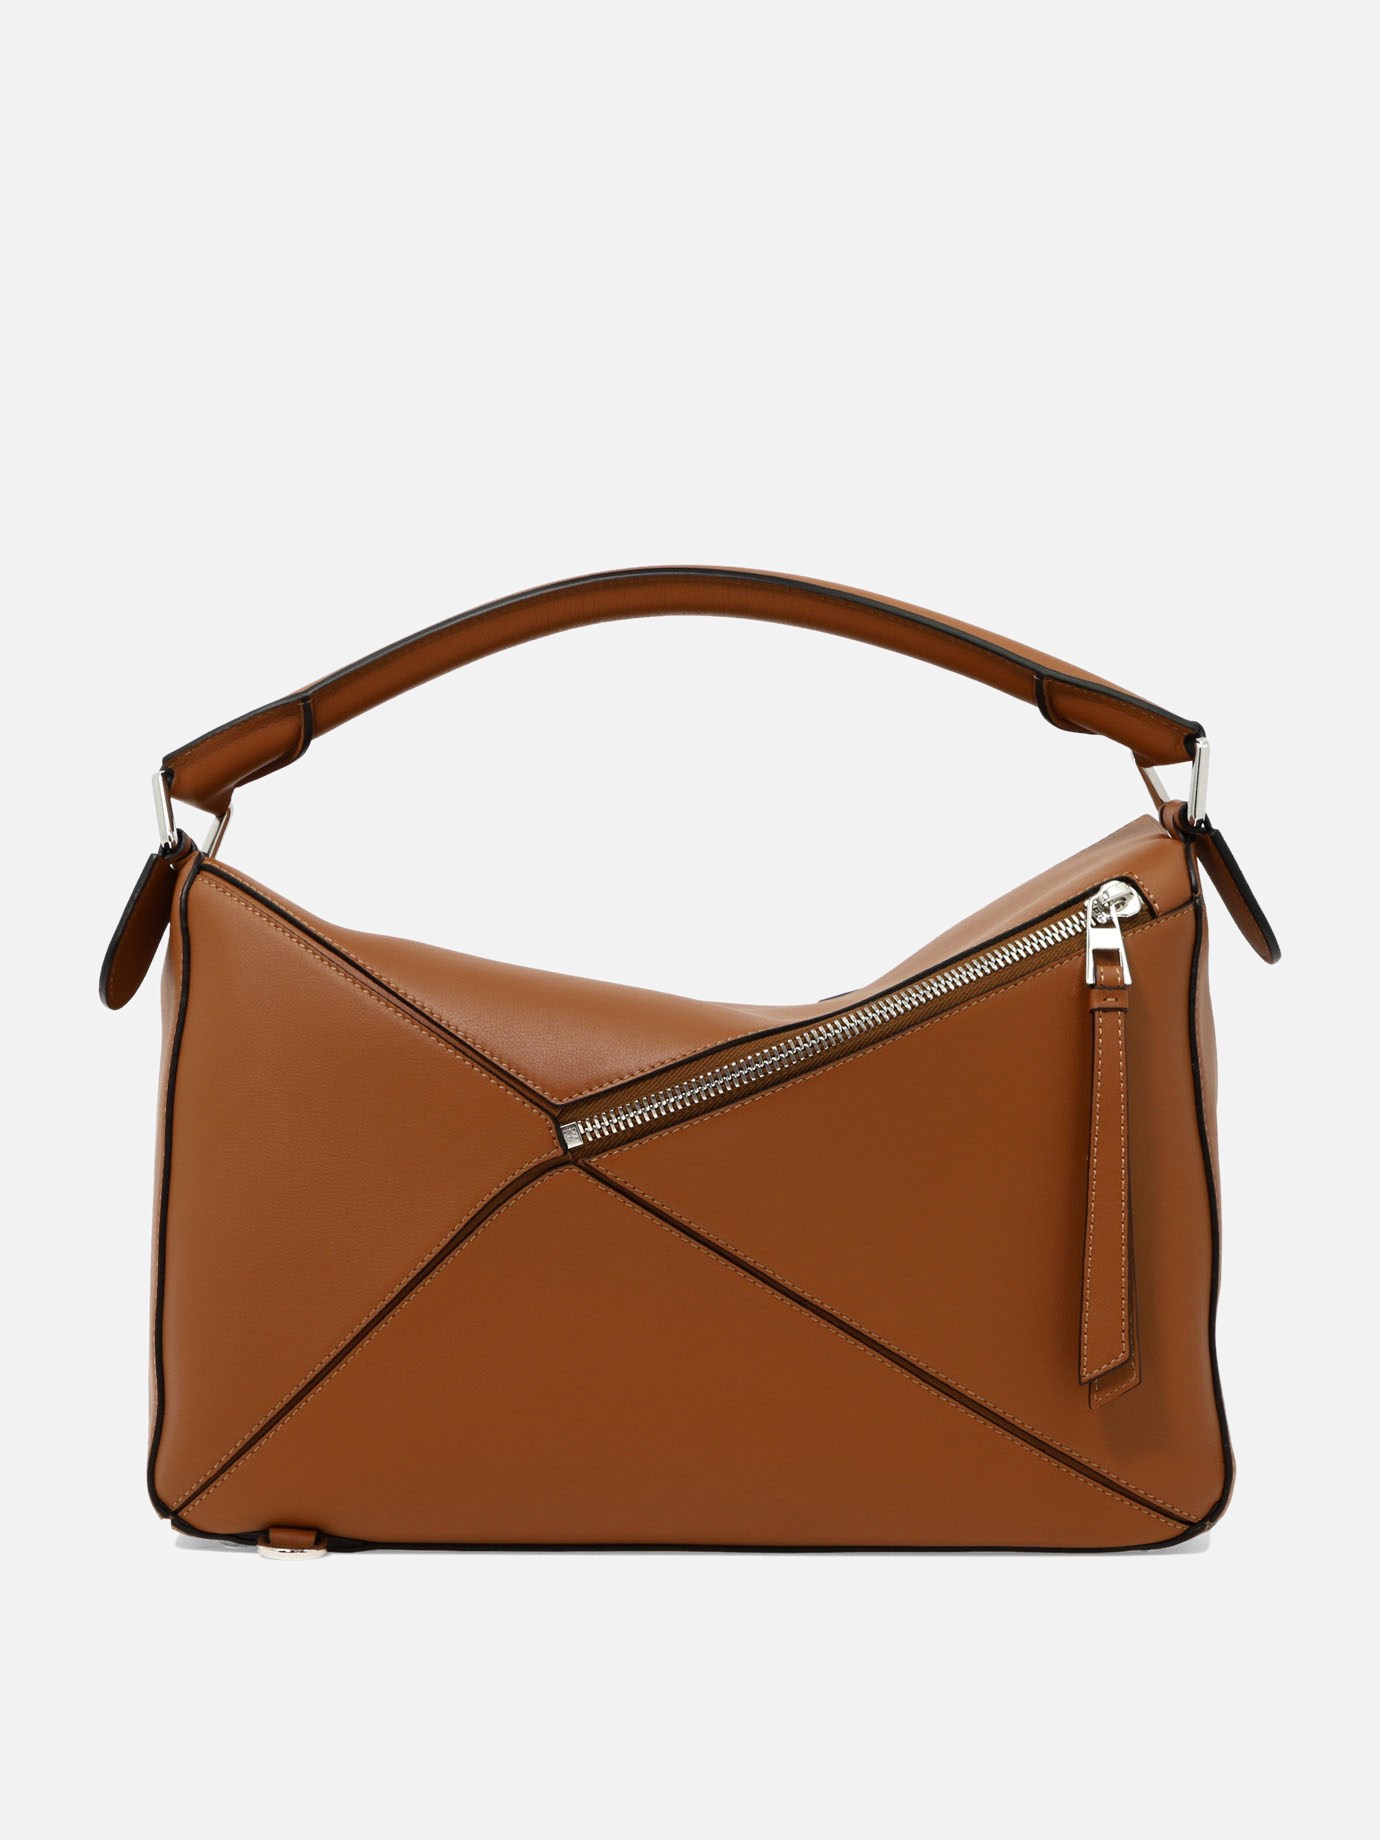  Puzzle Large  handbag by Loewe